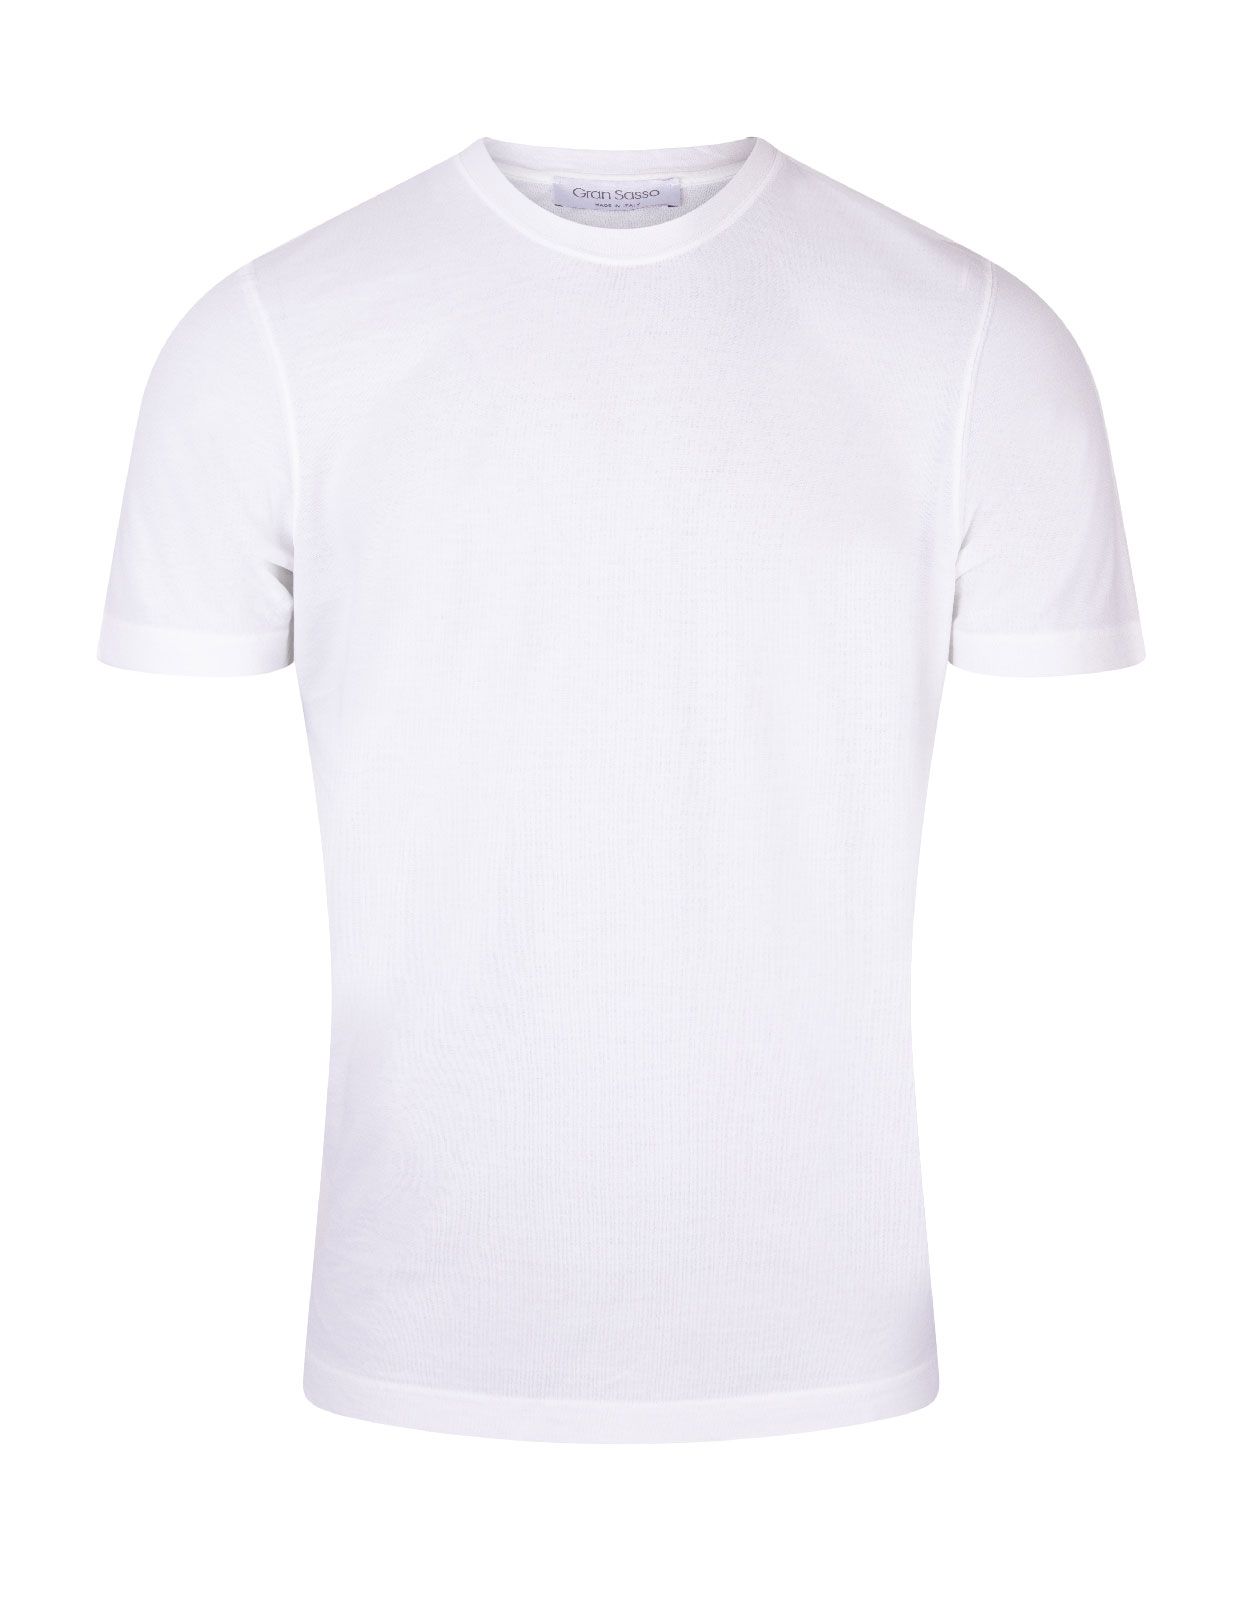 T-shirt Cotton Crew Neck White Stl 52